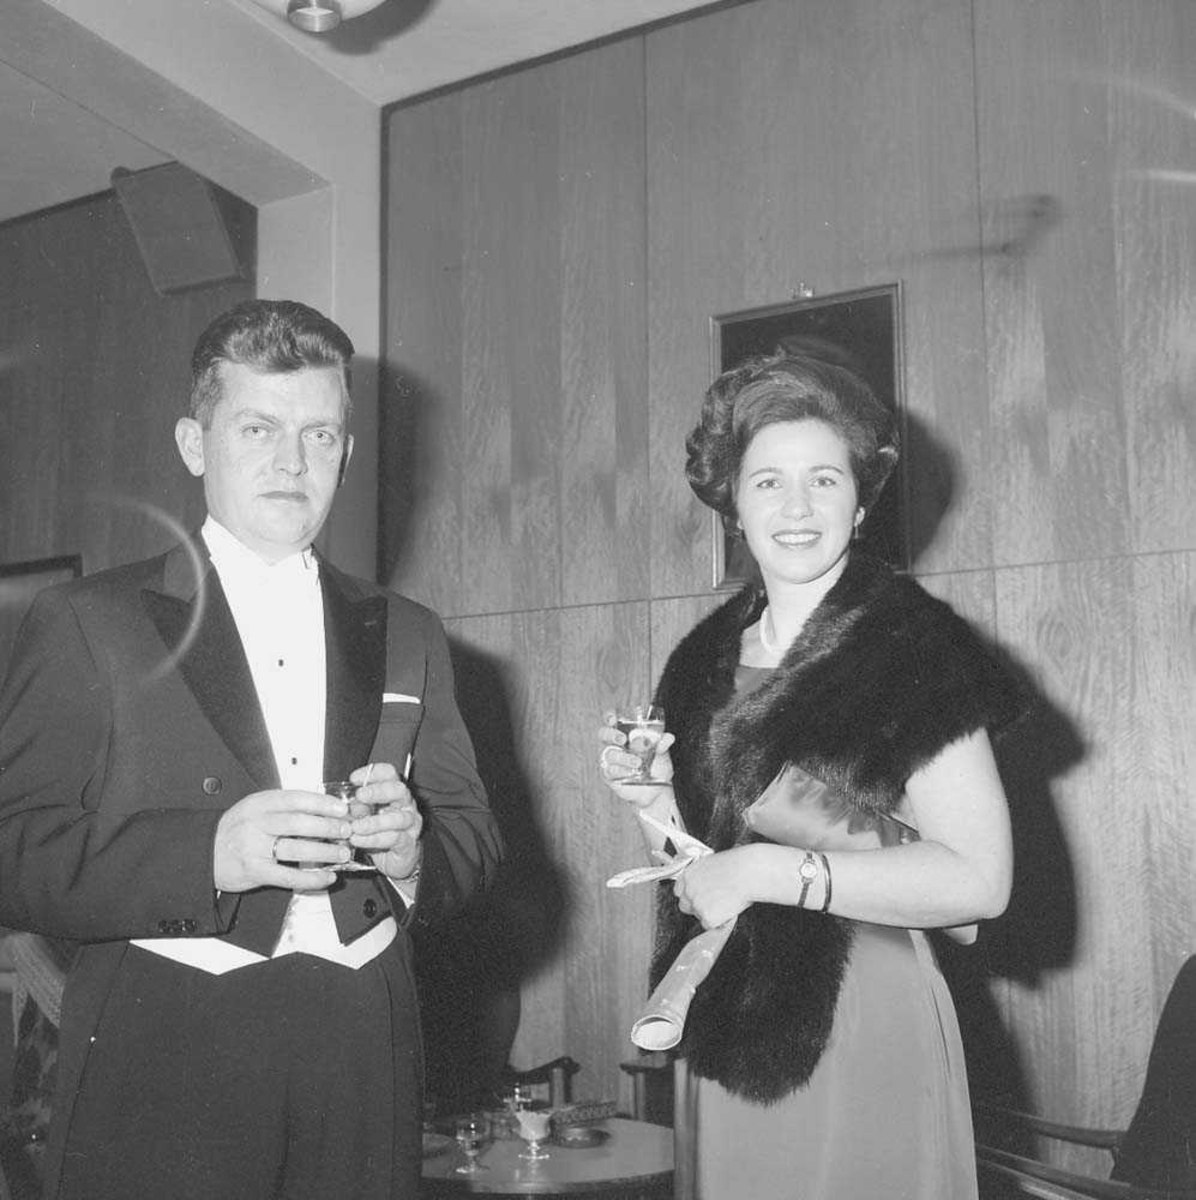 Garnisonsballet 1965, i Messe I på Bodø flystasjon. Odd Svang-Rasmussen med kone ønsker gjestene velkommen til ballet.